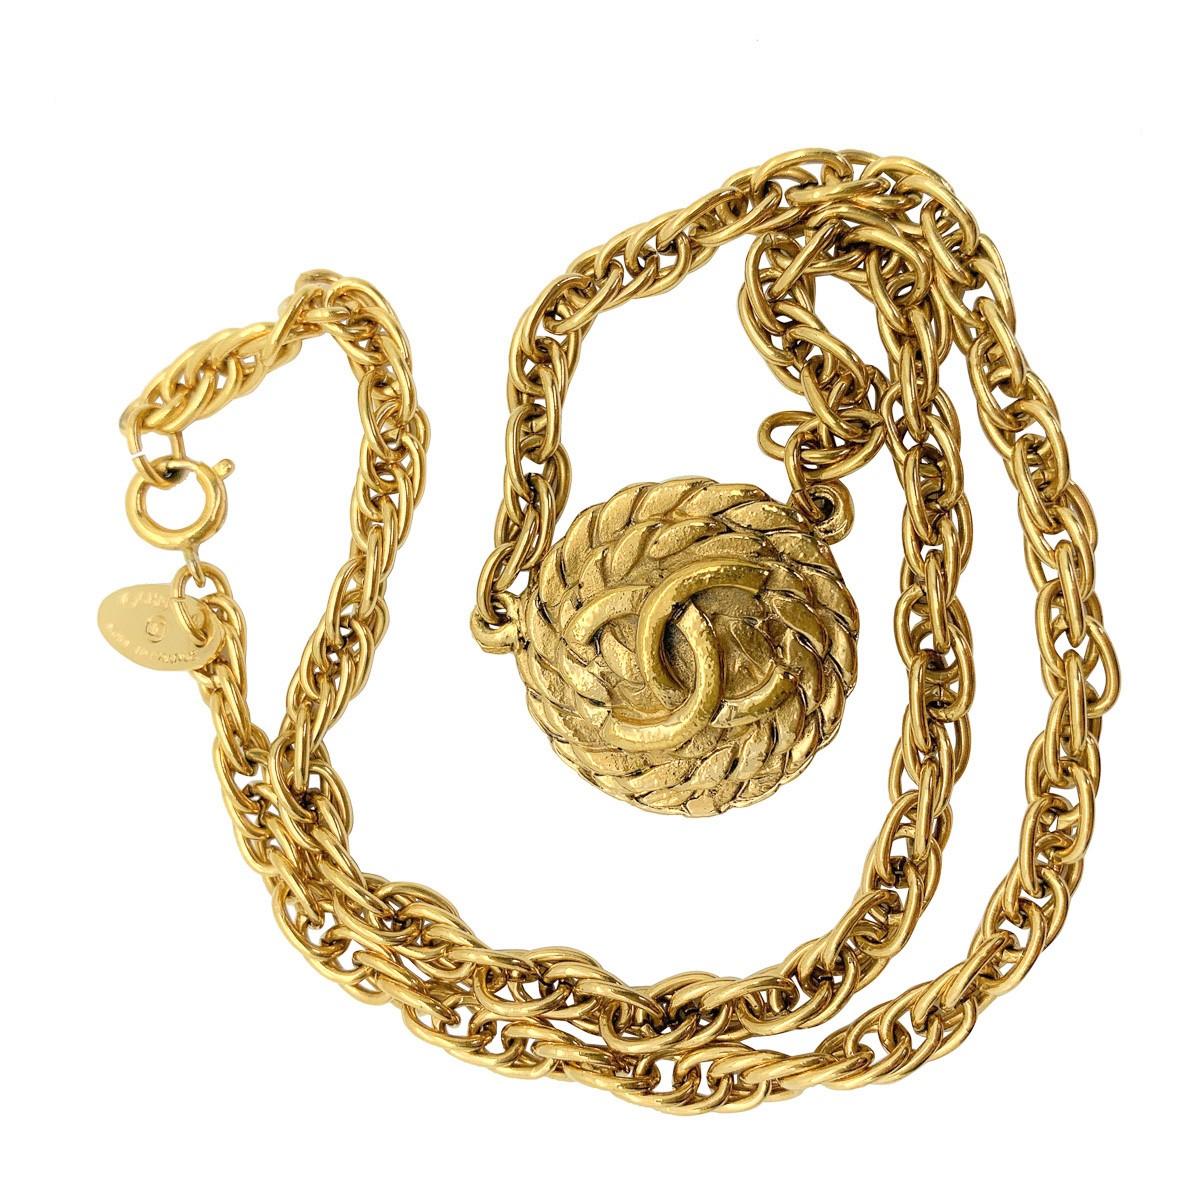 Un collier vintage iconique de Chanel avec le logo en forme de corde et les C emboîtés sur un médaillon en forme de corde enroulée. Sertie d'une chaîne épaisse, cette pièce fera sans aucun doute tourner les têtes grâce à son héritage.

Vintage